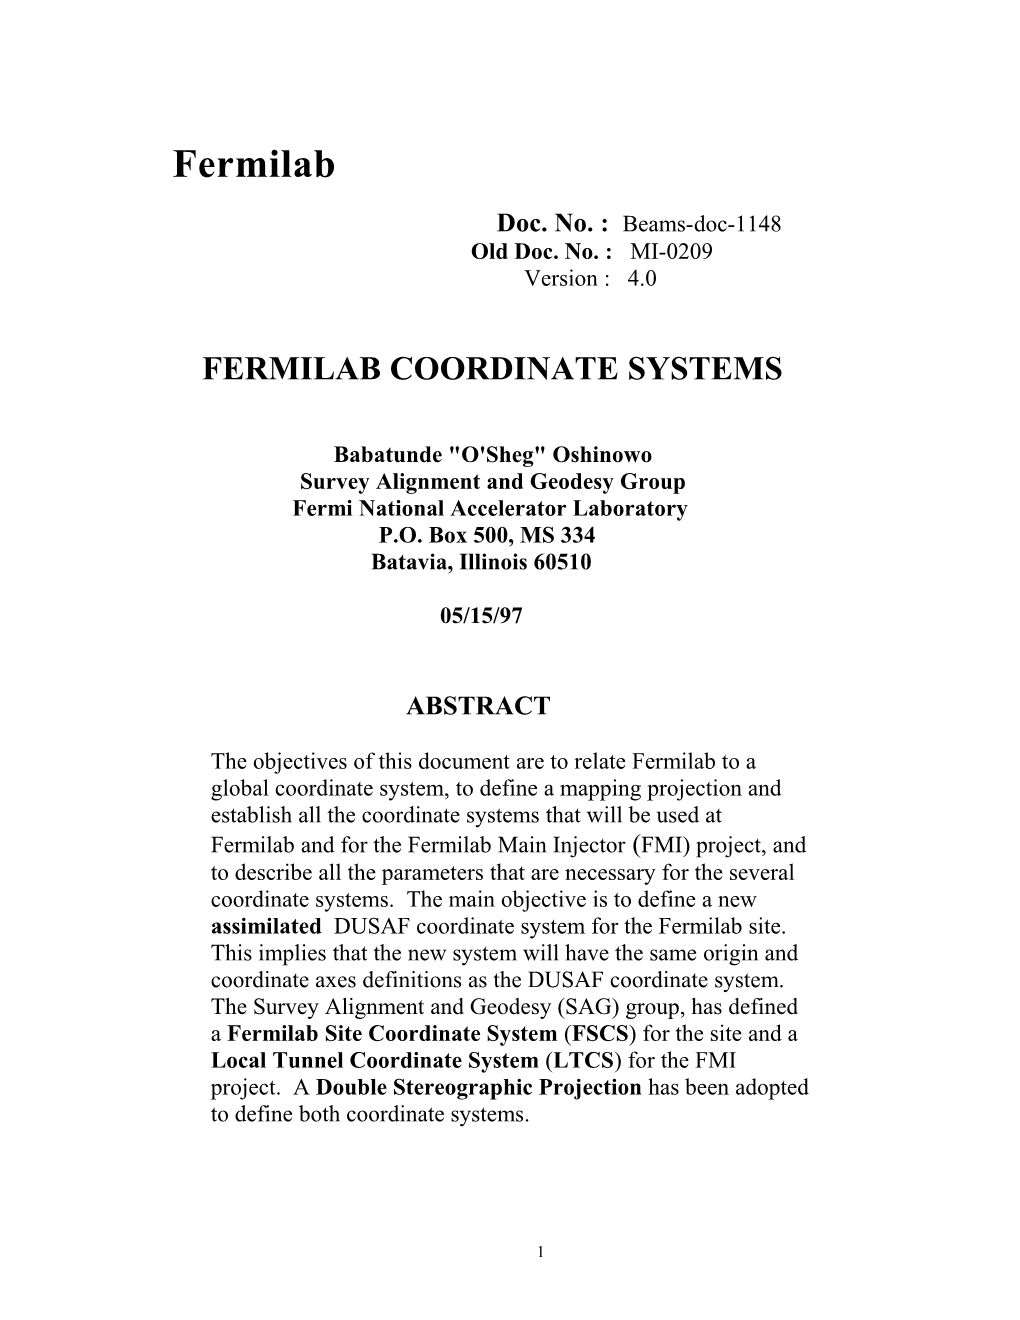 Fermilab/FMI Coordinate Systems